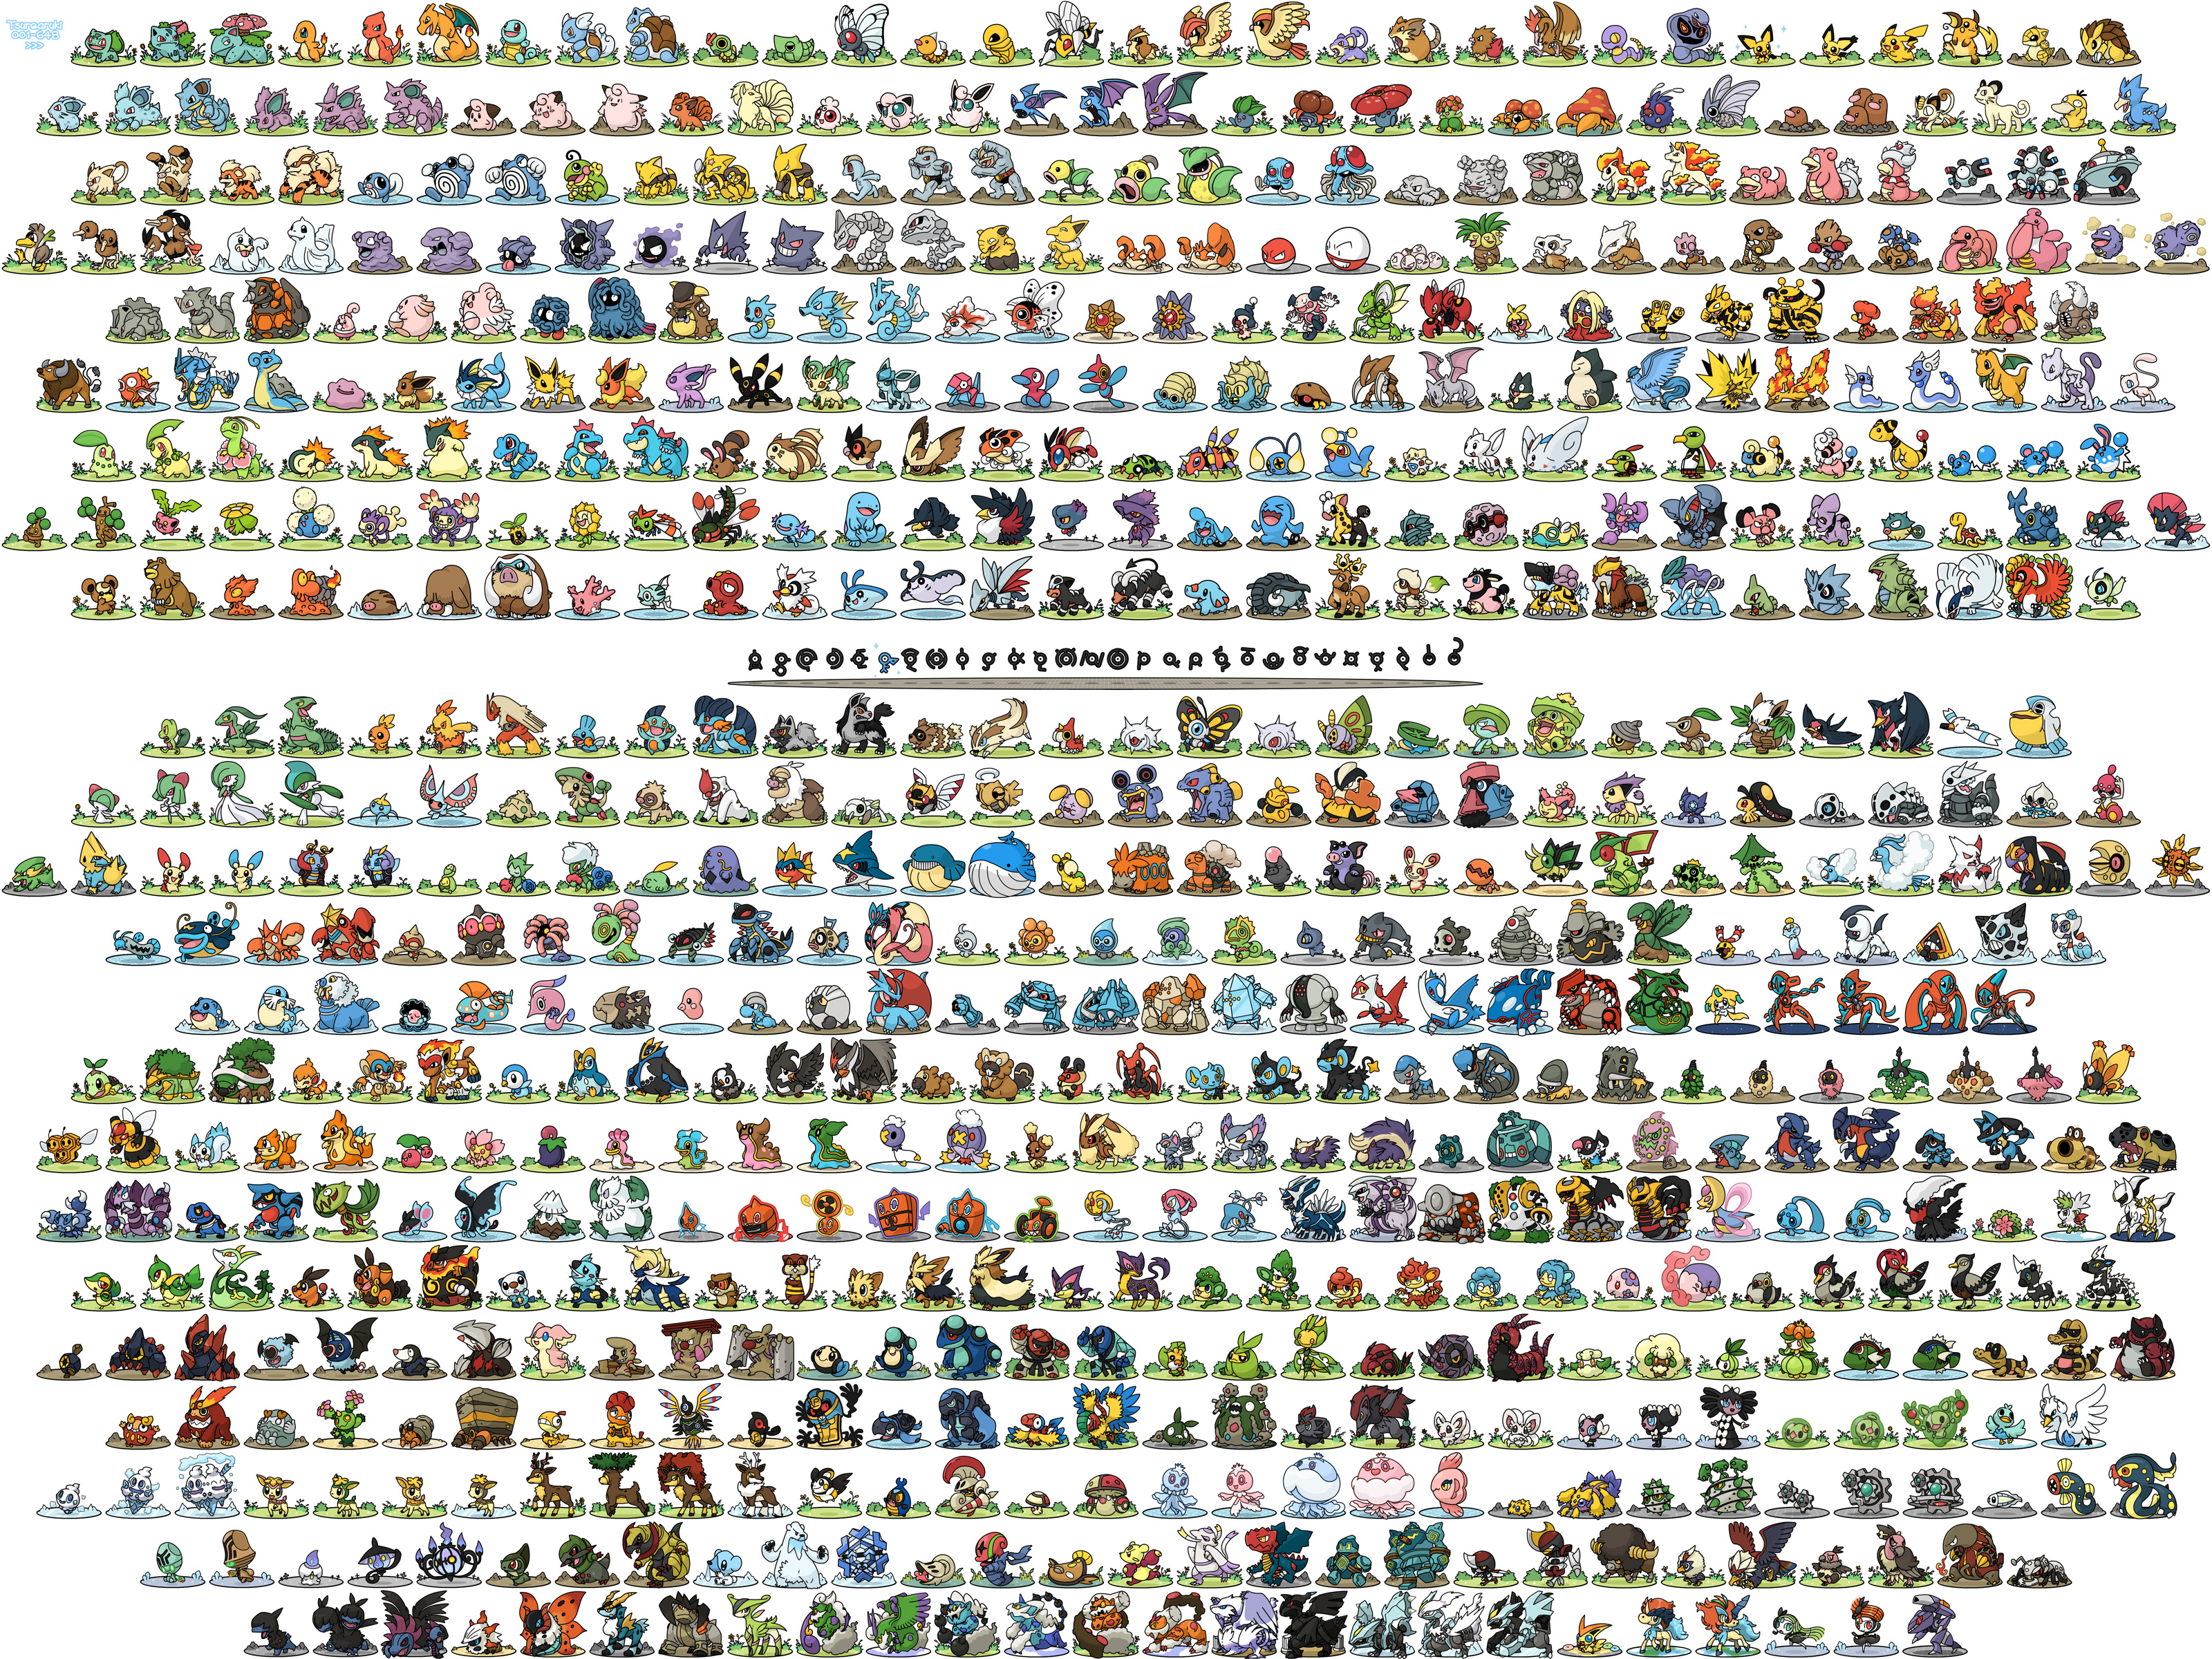 1080p Snorlax (Pokémon) Hd Images